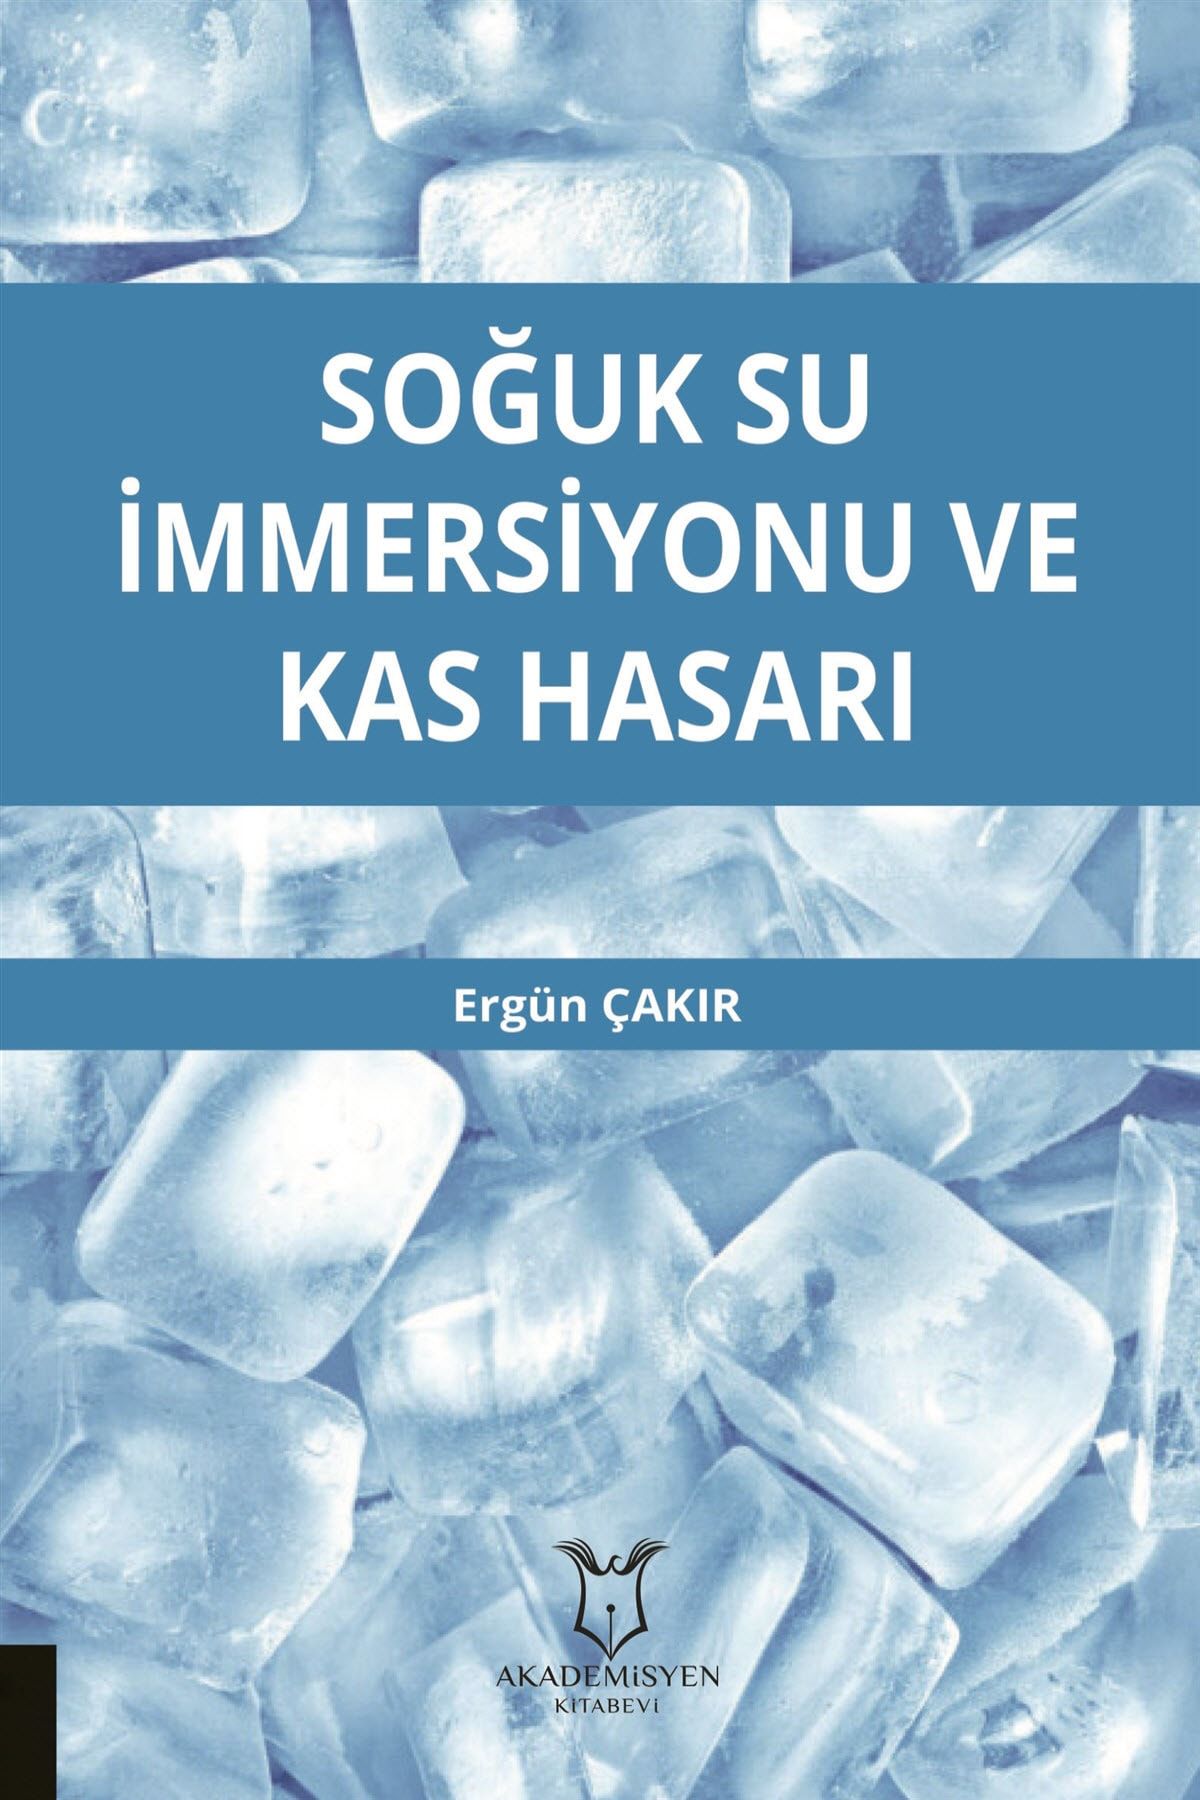 Akademisyen Kitabevi Soğuk Su İmmersiyonu ve Kas Hasarı - Ergün Çakır